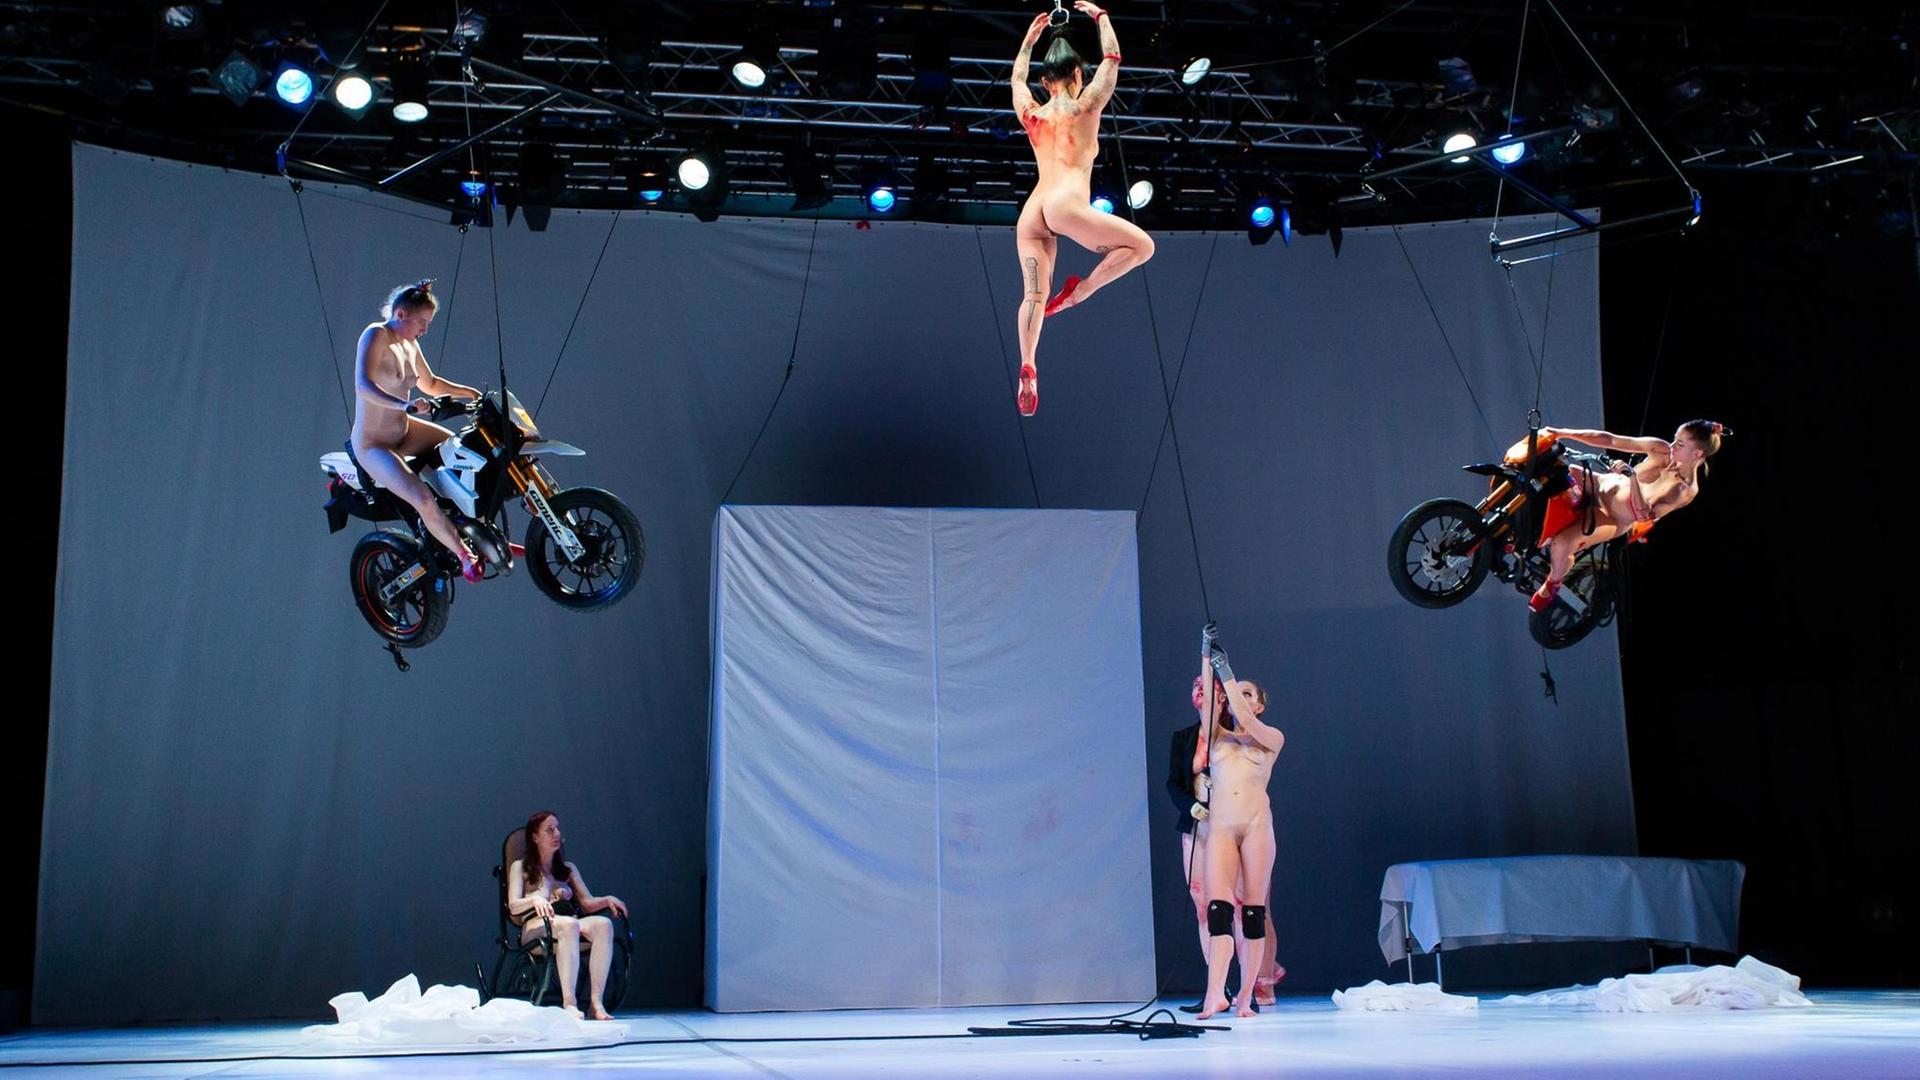 Künstlerinen schweben im Stück "Tanz" nackt auf Motorrädern